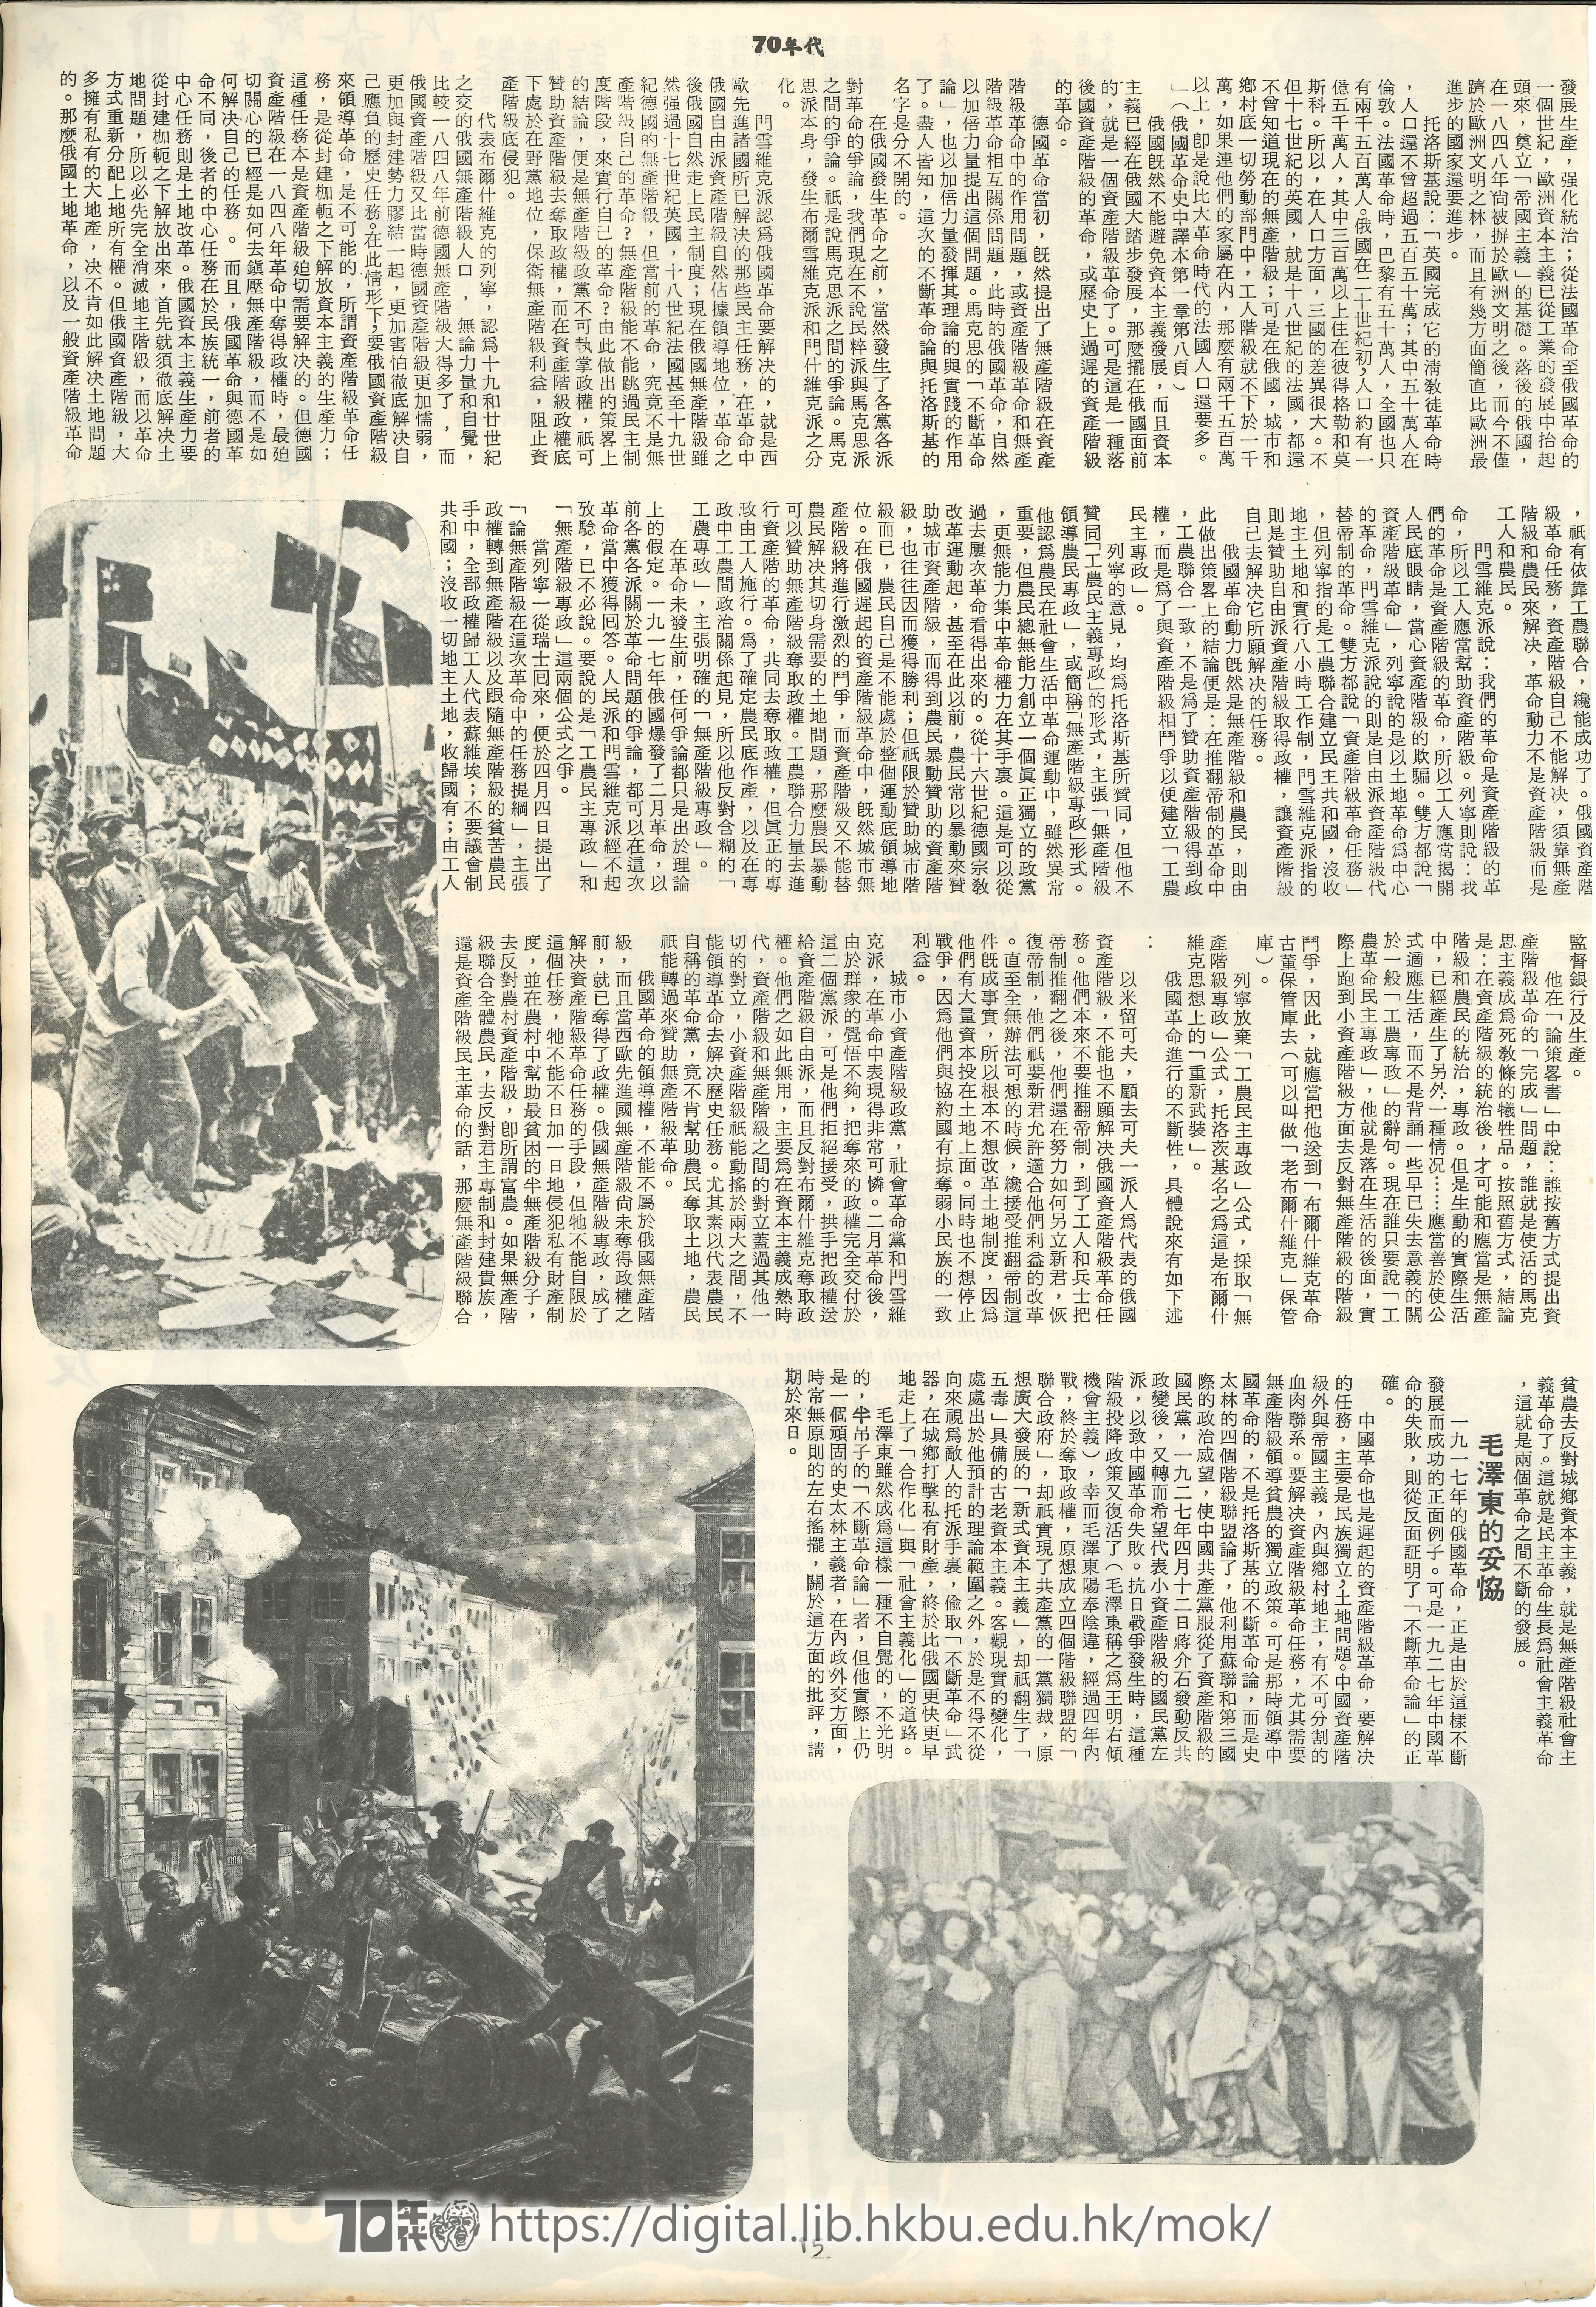  19 「不斷革命論」的歷史發展與中國革命 俞洪 